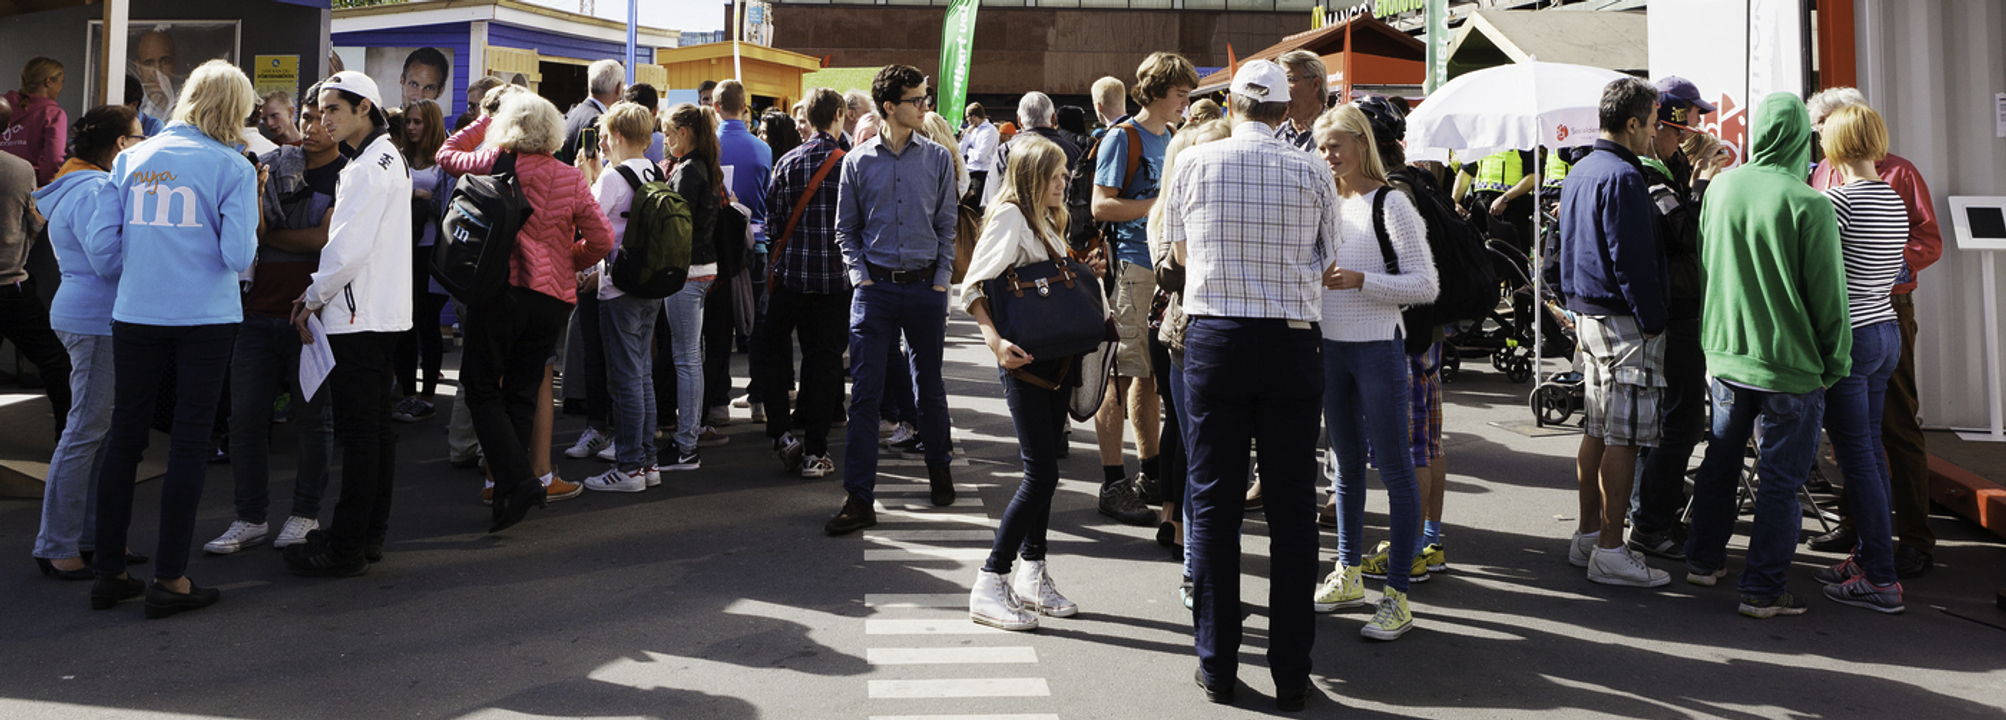 Stor samling människor vid valstugor i centrala Stockholm.